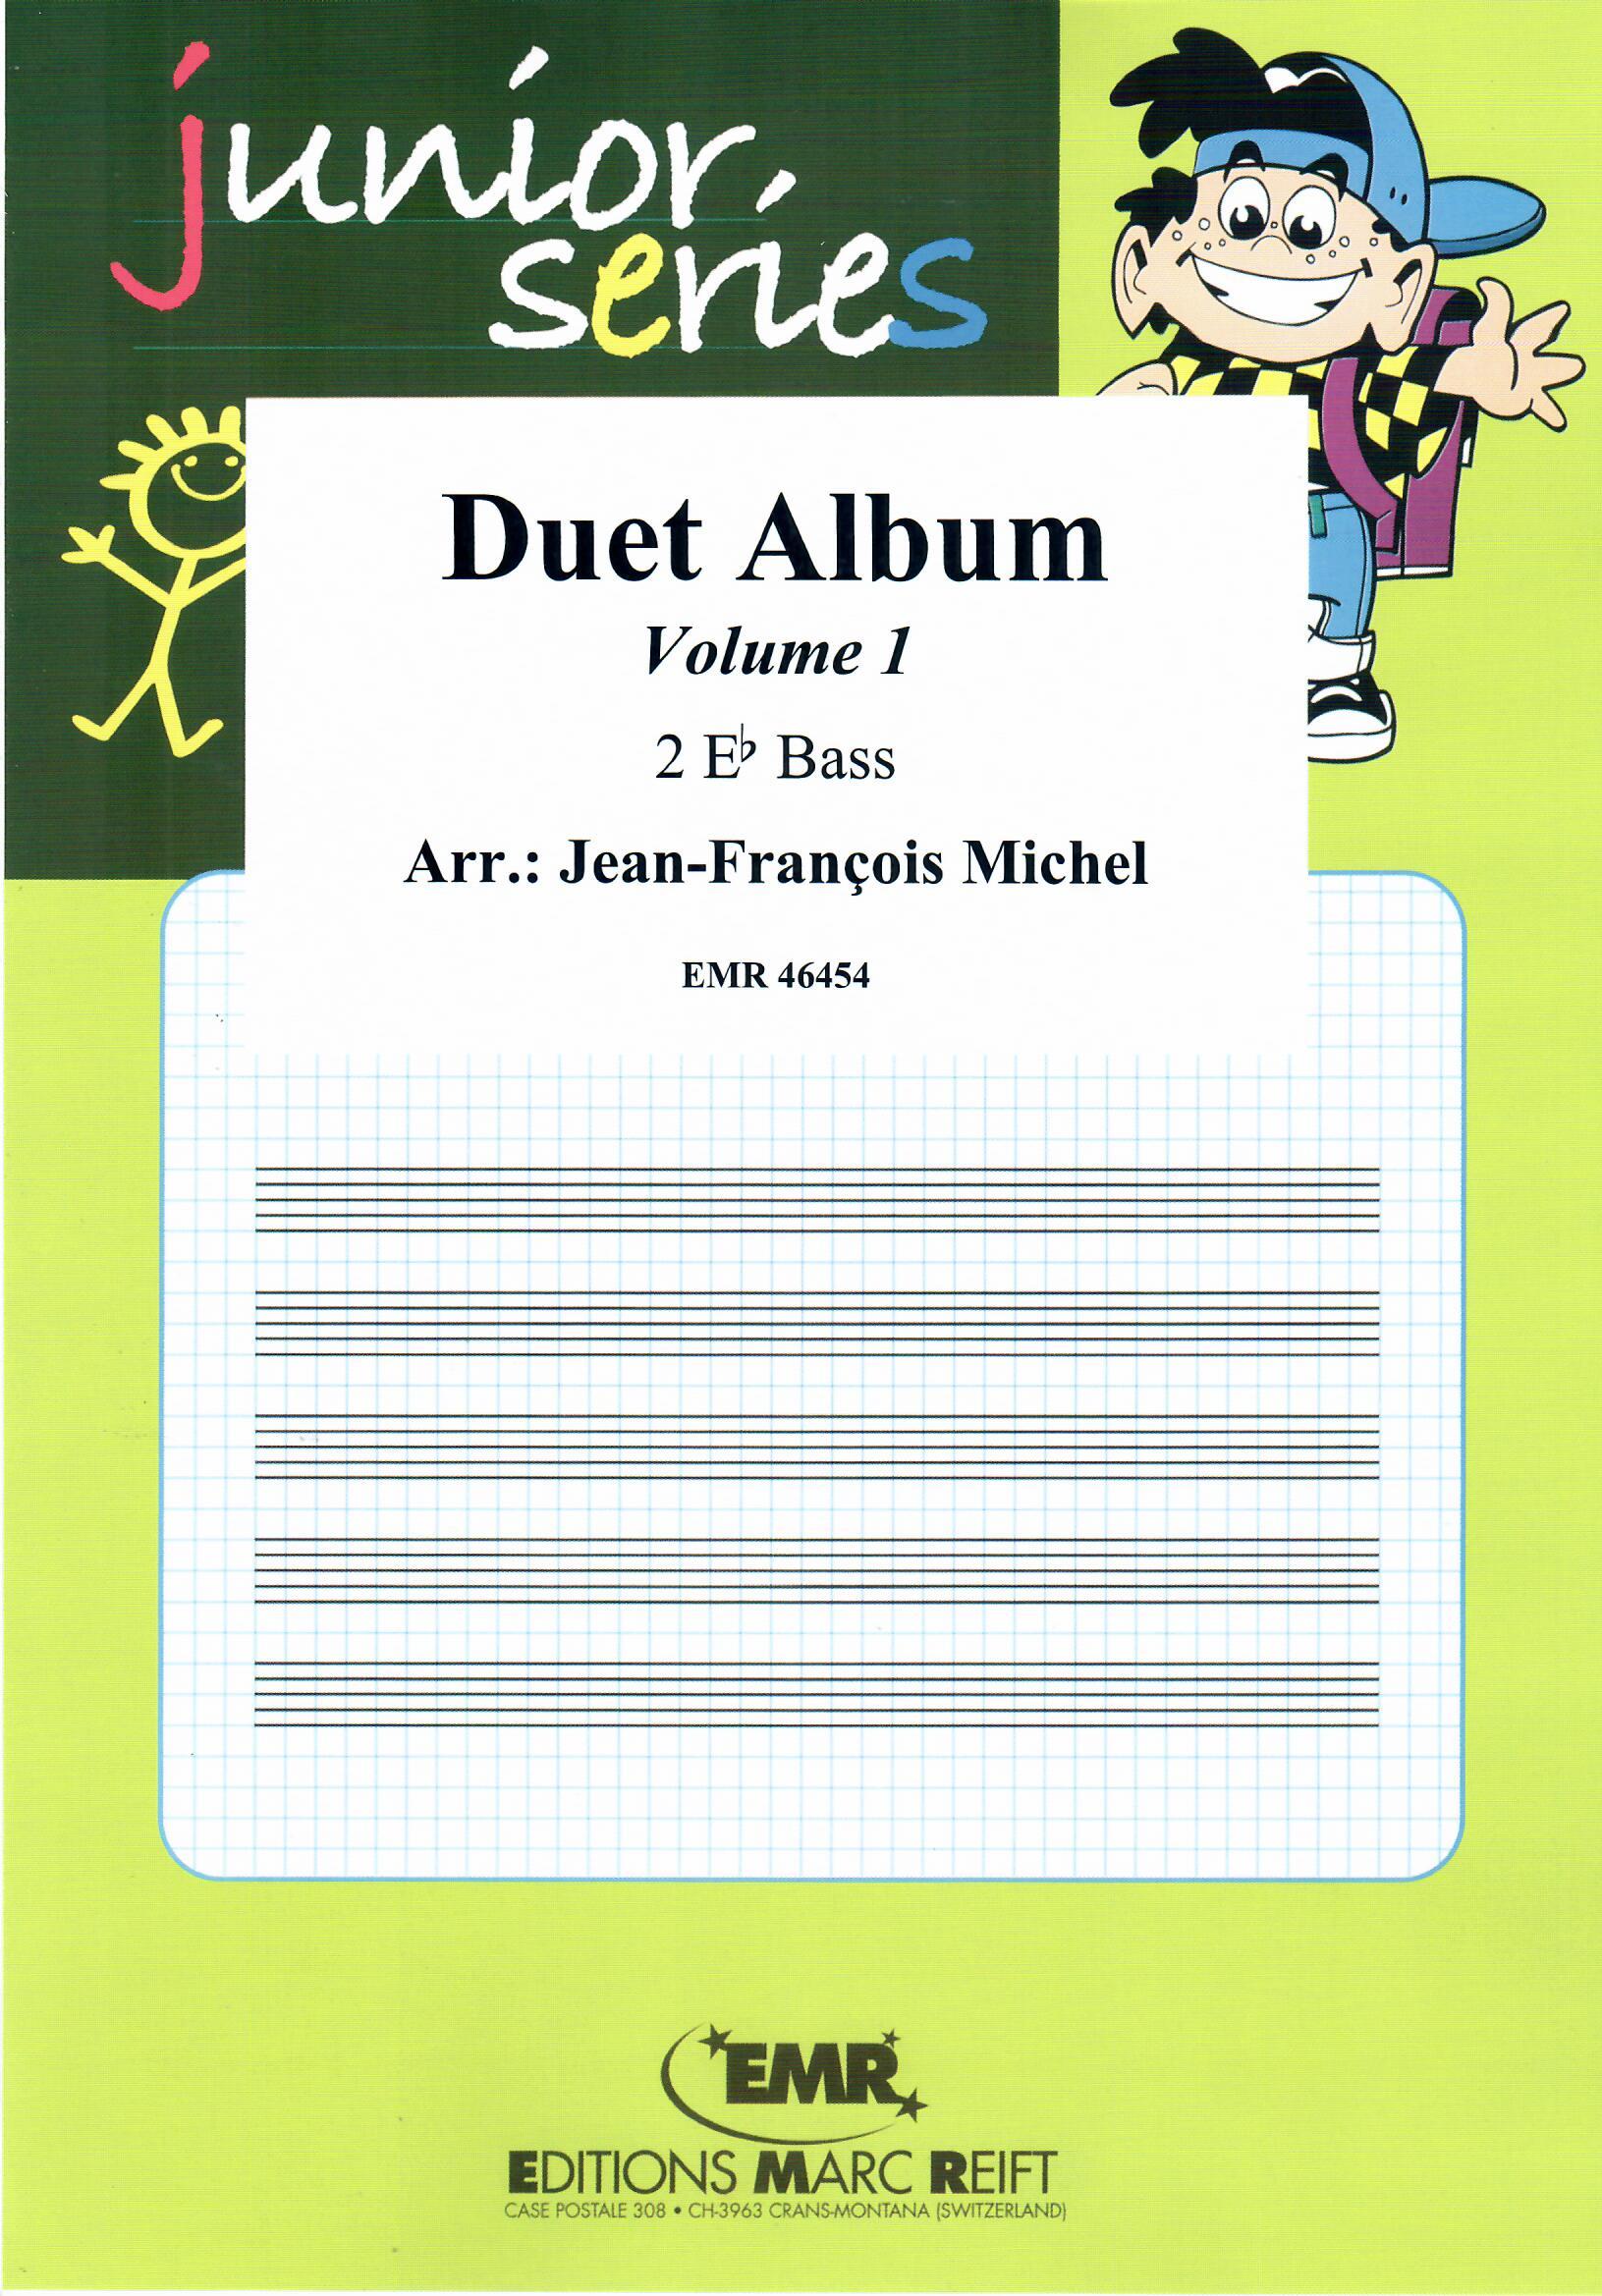 DUET ALBUM VOL. 1 - Eb.Bass Duet